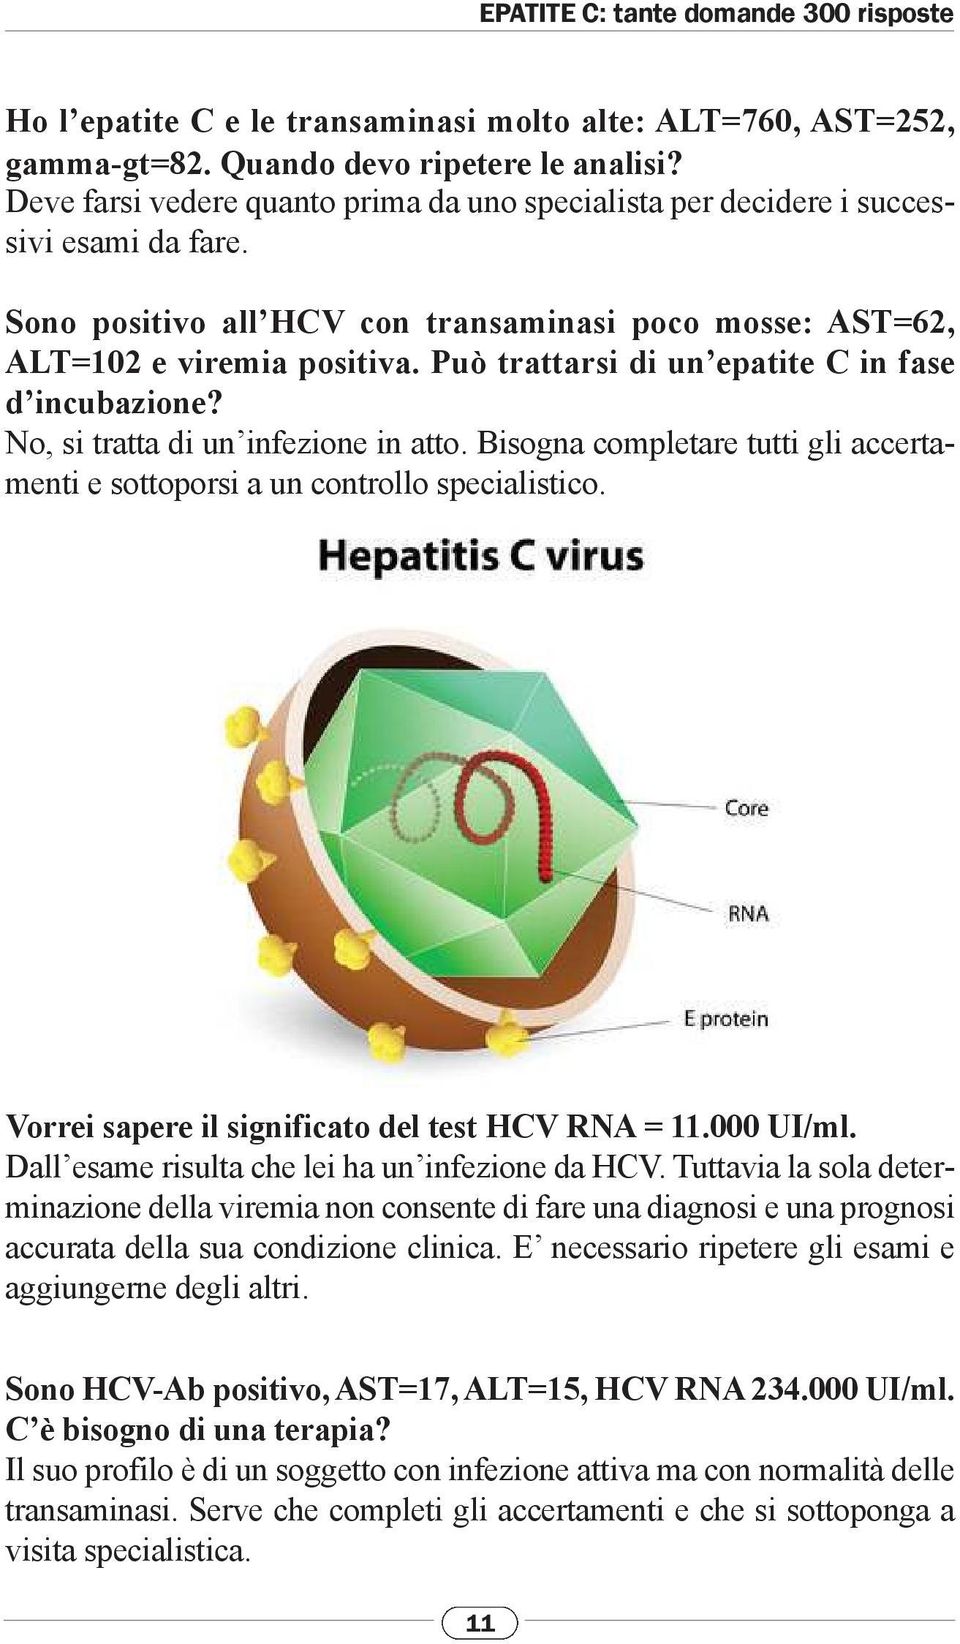 Bisogna completare tutti gli accertamenti e sottoporsi a un controllo specialistico. Vorrei sapere il significato del test HCV RNA = 11.000 UI/ml. Dall esame risulta che lei ha un infezione da HCV.